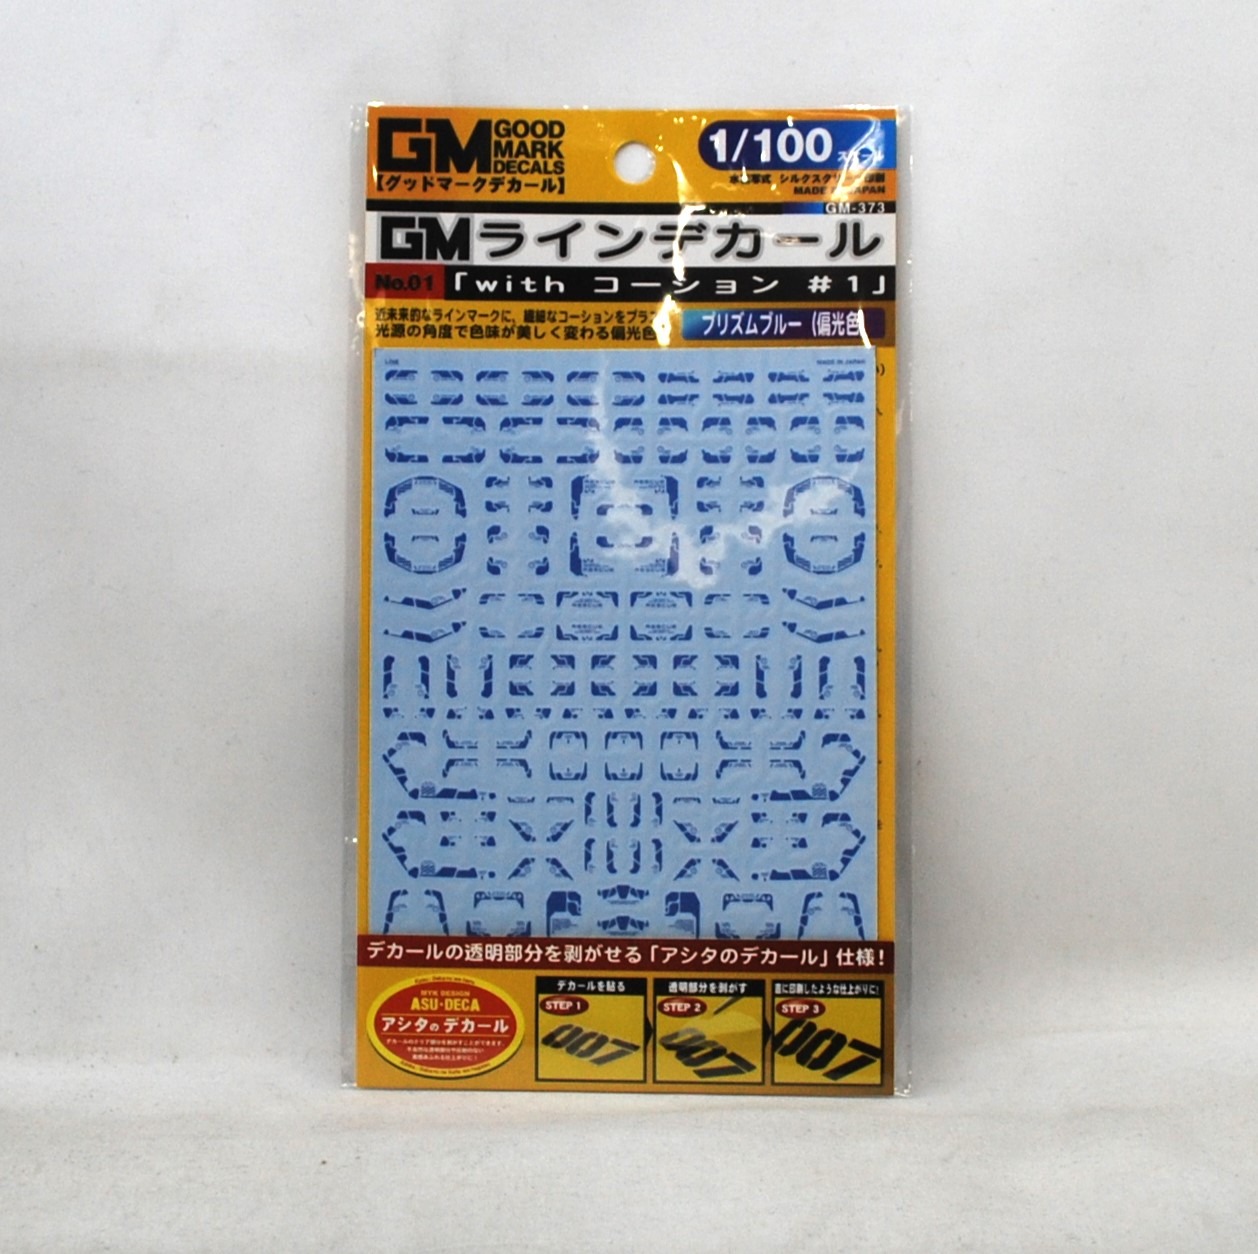 アシタのデカール GM-373 1/100 GM ラインデカール No.1｢with コーション｣#1プリズムブルー